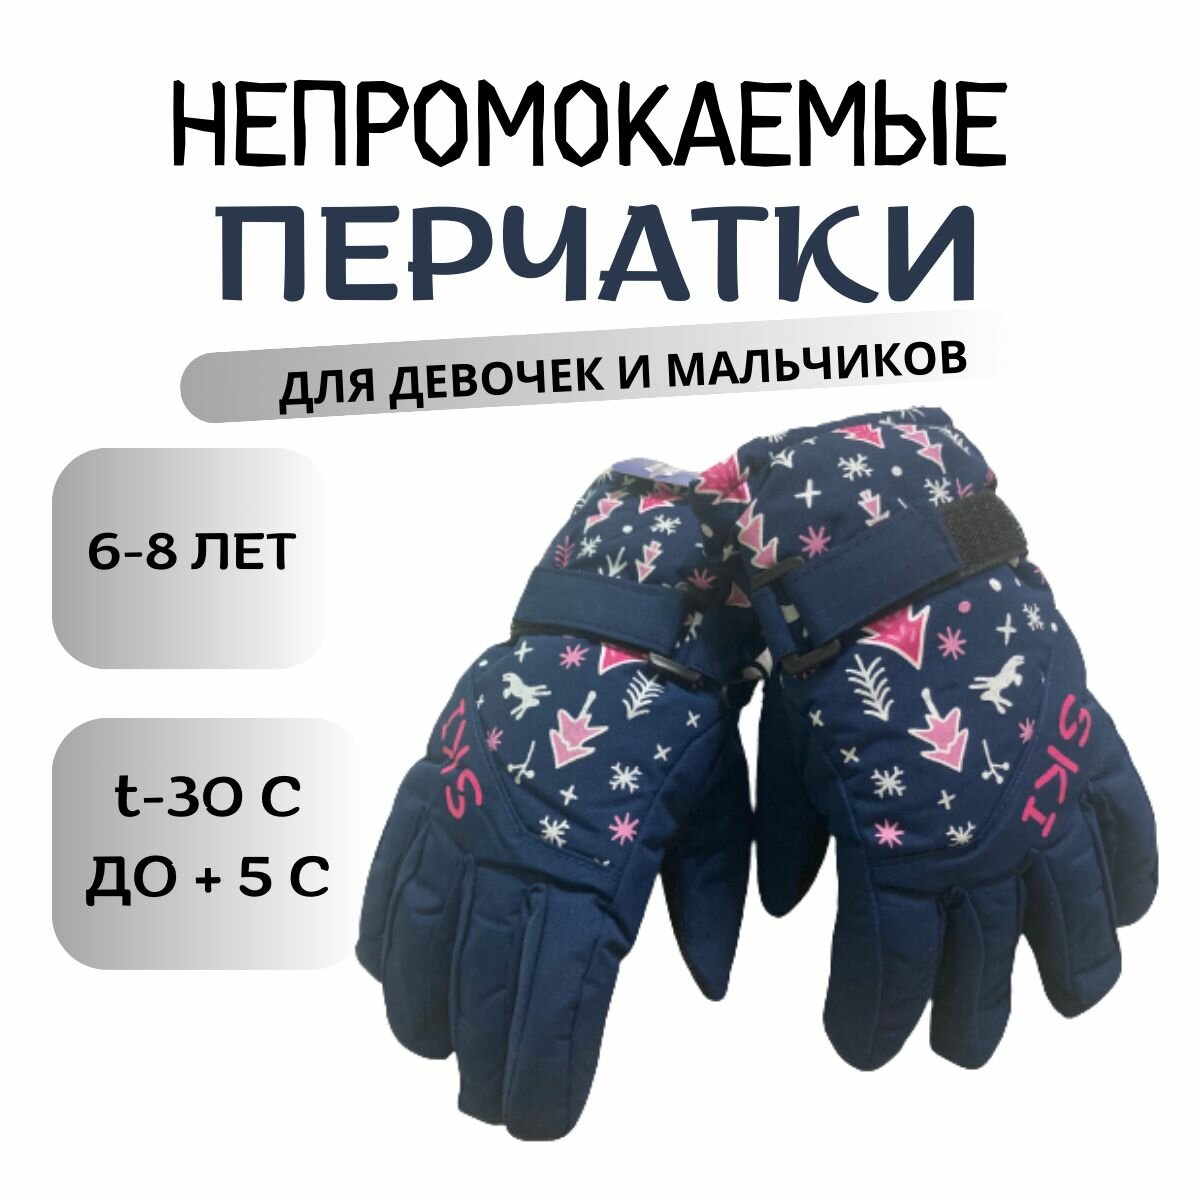 Детские непромокаемые перчатки для сноубординга 6-8 лет